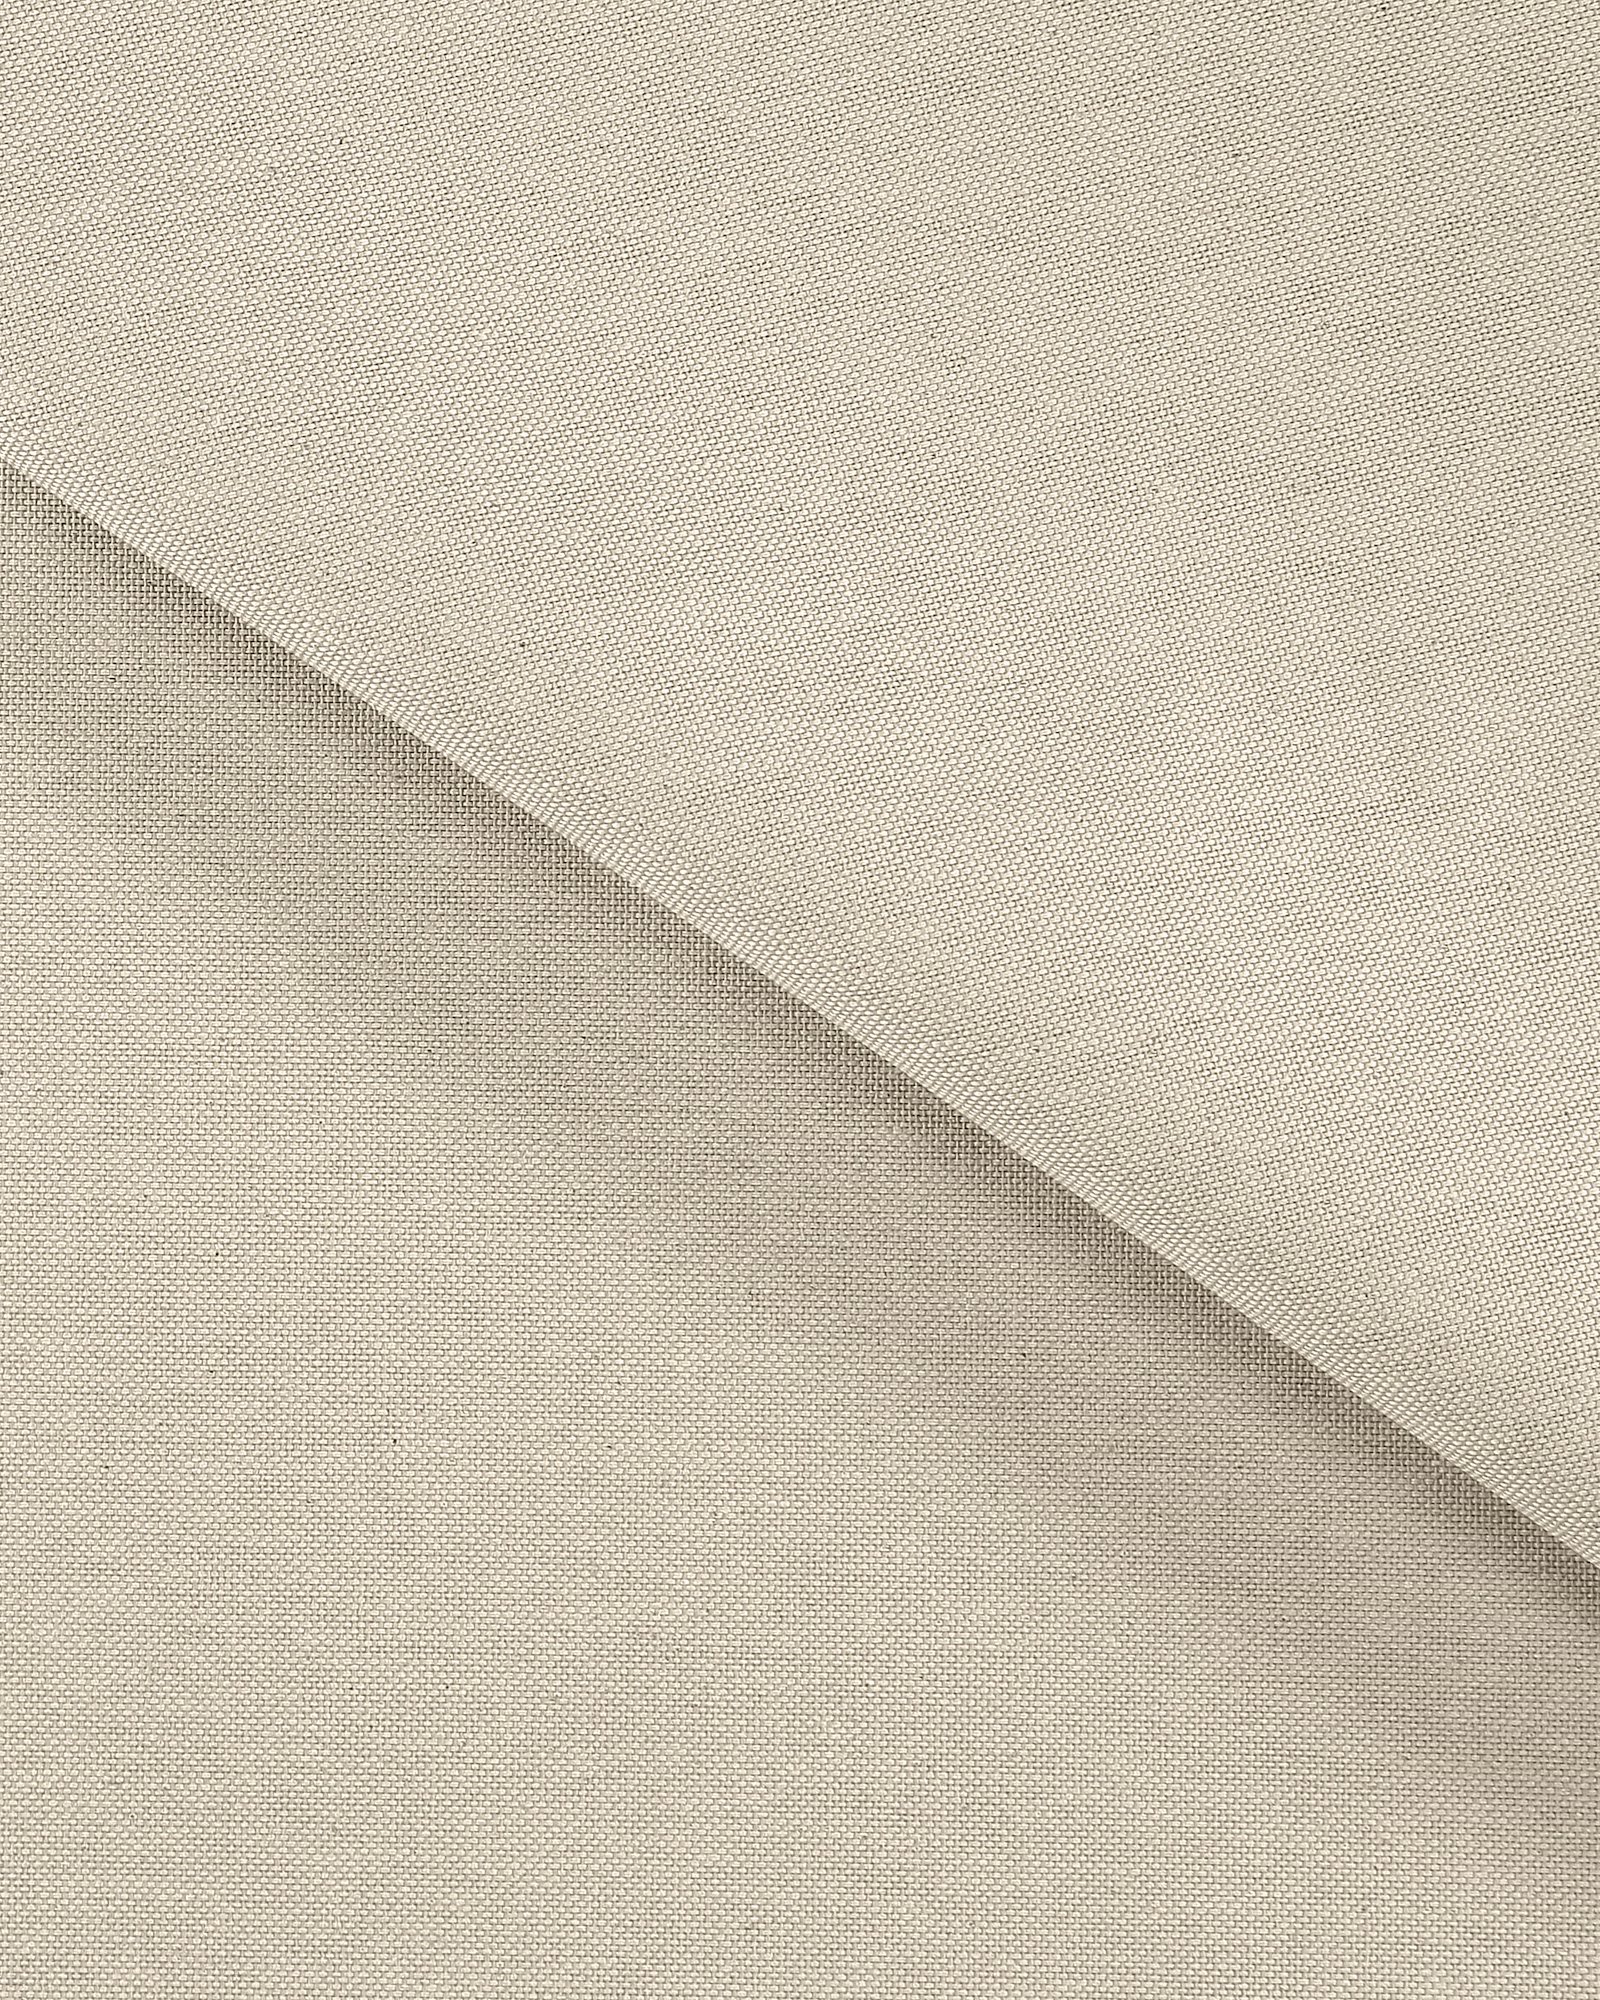 Tekstilvoksduk linlook/lys grå 160 cm 872301_pack